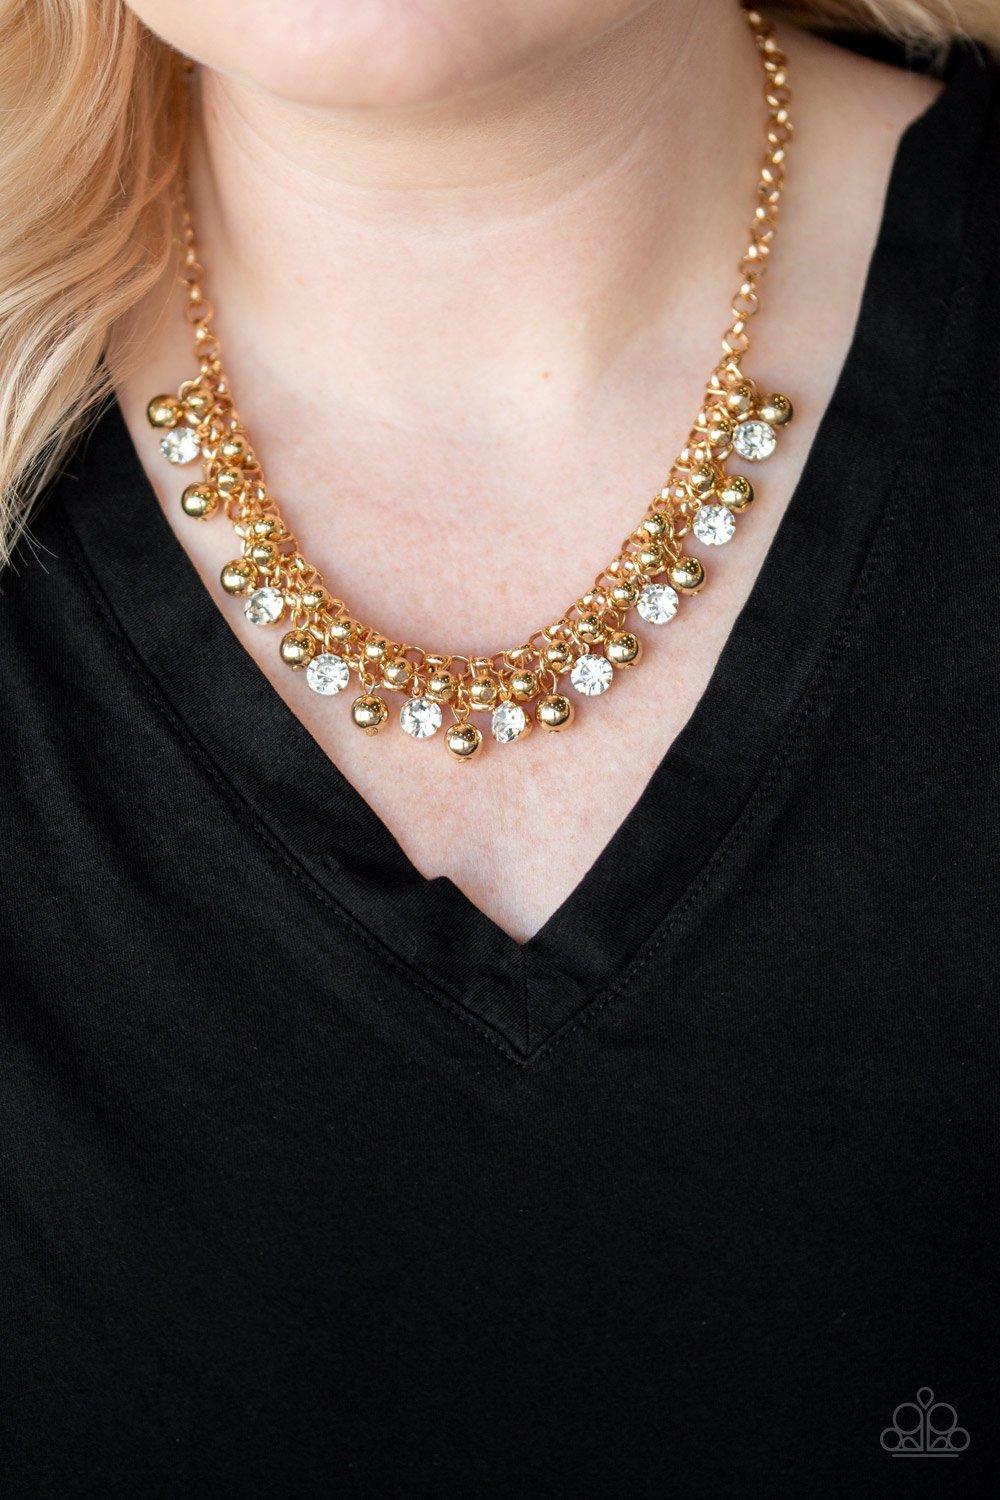 Wall Street Winner Gold Necklace - Jewelry by Bretta